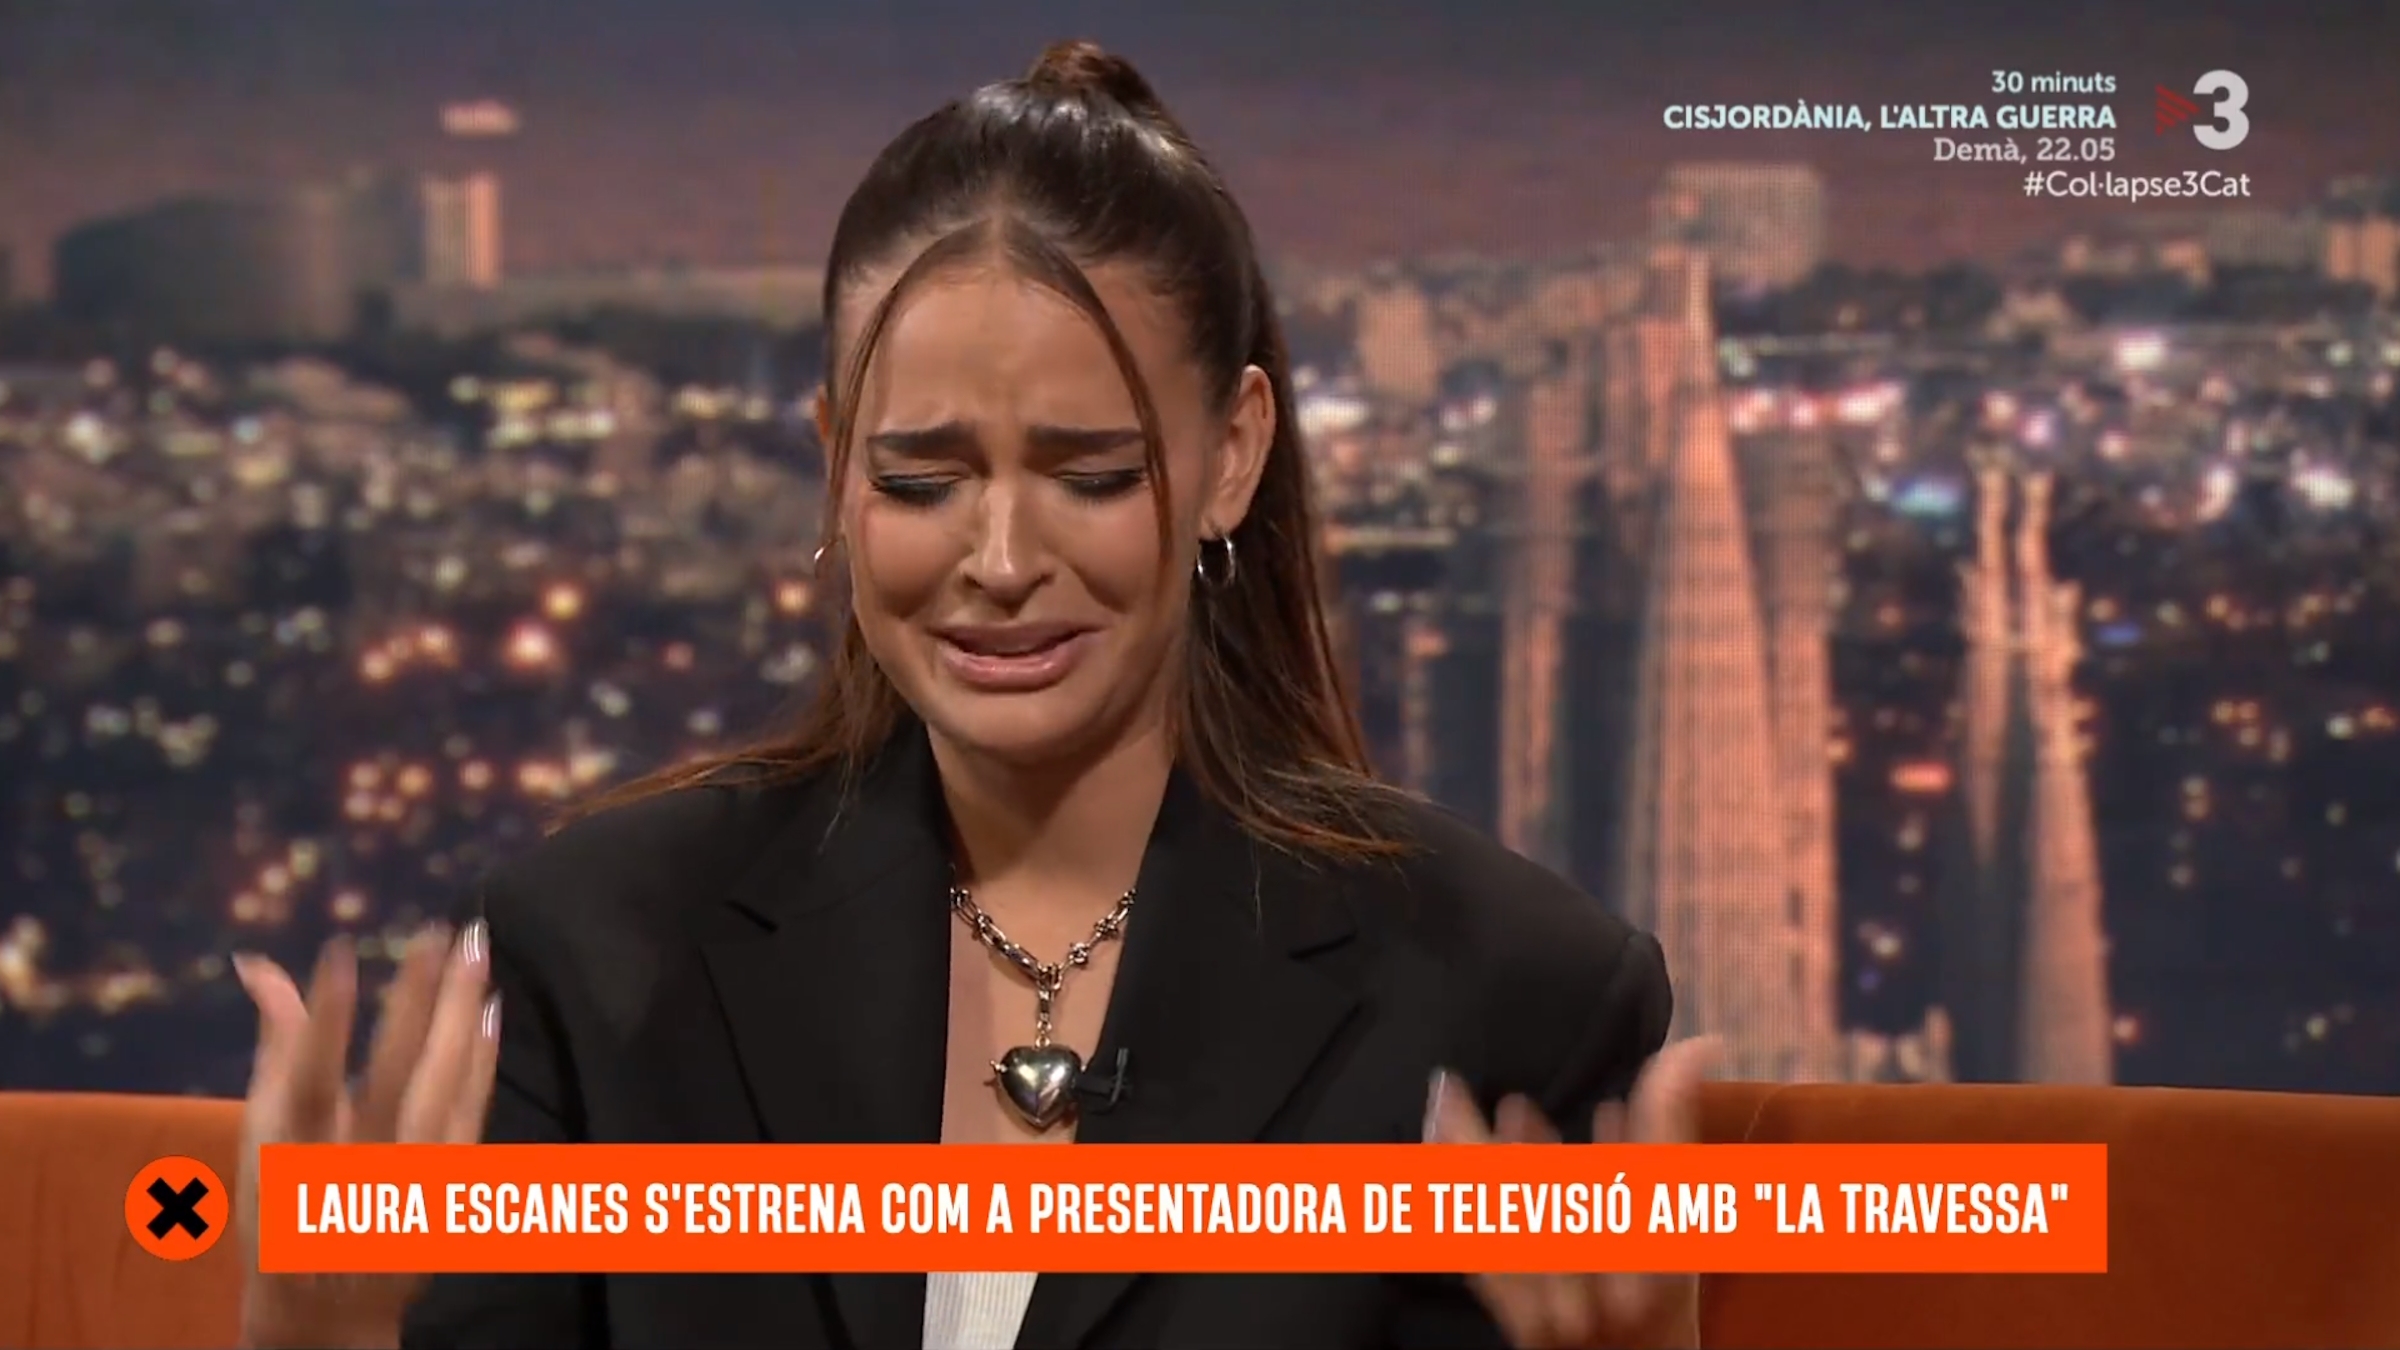 Laura Escanes llorando desconsolada los primeros días en TV3, comentario hiriente